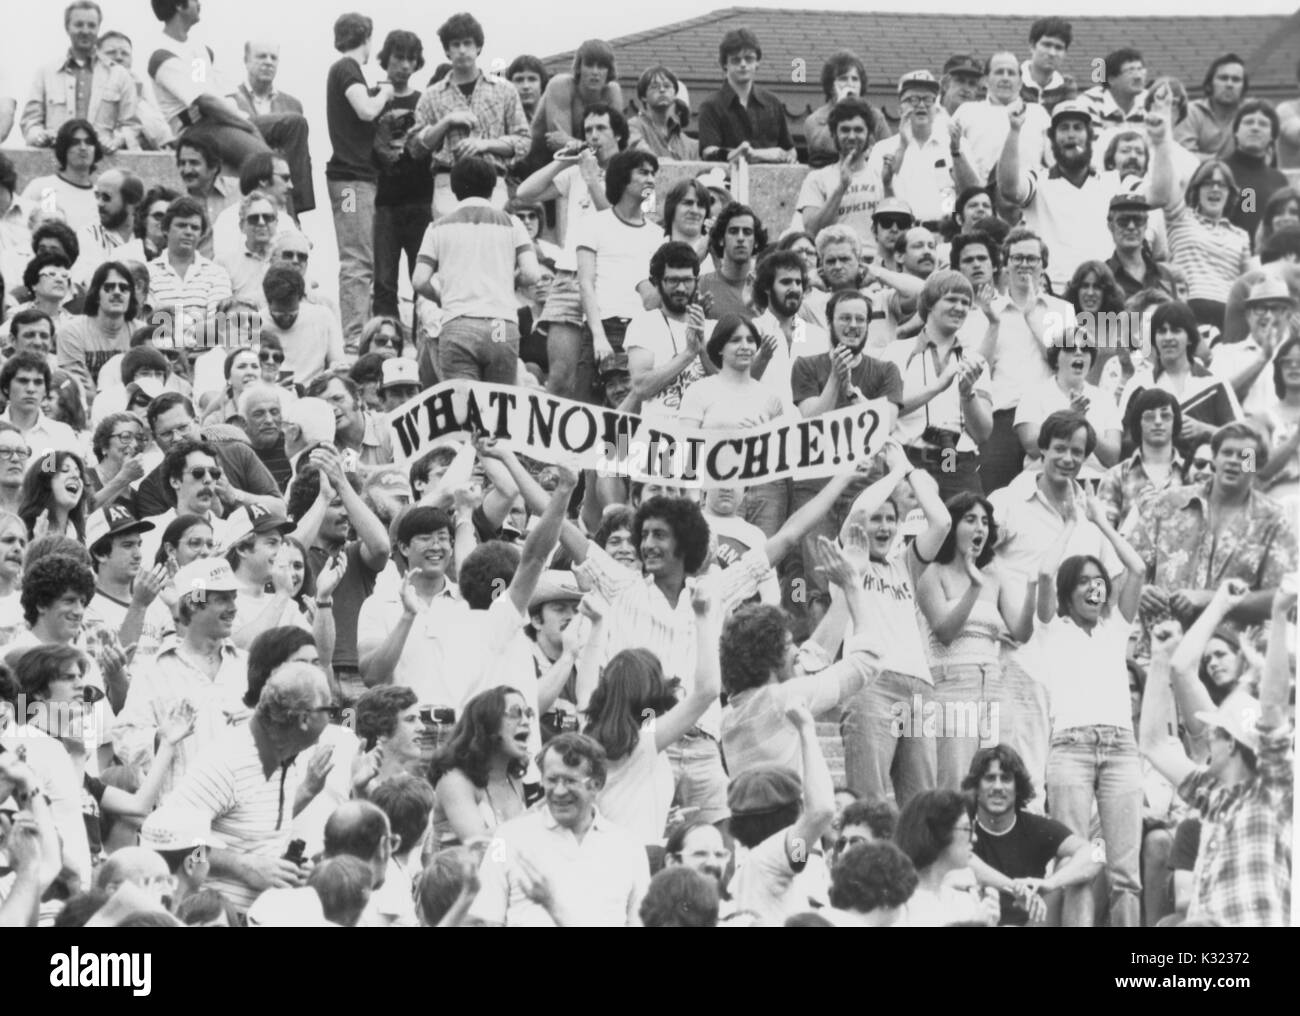 Graustufen Foto von Studenten und Fans von der Tribüne aus während der Johns Hopkins University lacrosse übereinstimmen, während drei Studenten ein Banner in der Luft, die liest halten, 'Was nun Richie!!?", bezieht sich auf Karriere Ziel Leader Richie Hirsch, Baltimore, Maryland, 1978. Stockfoto